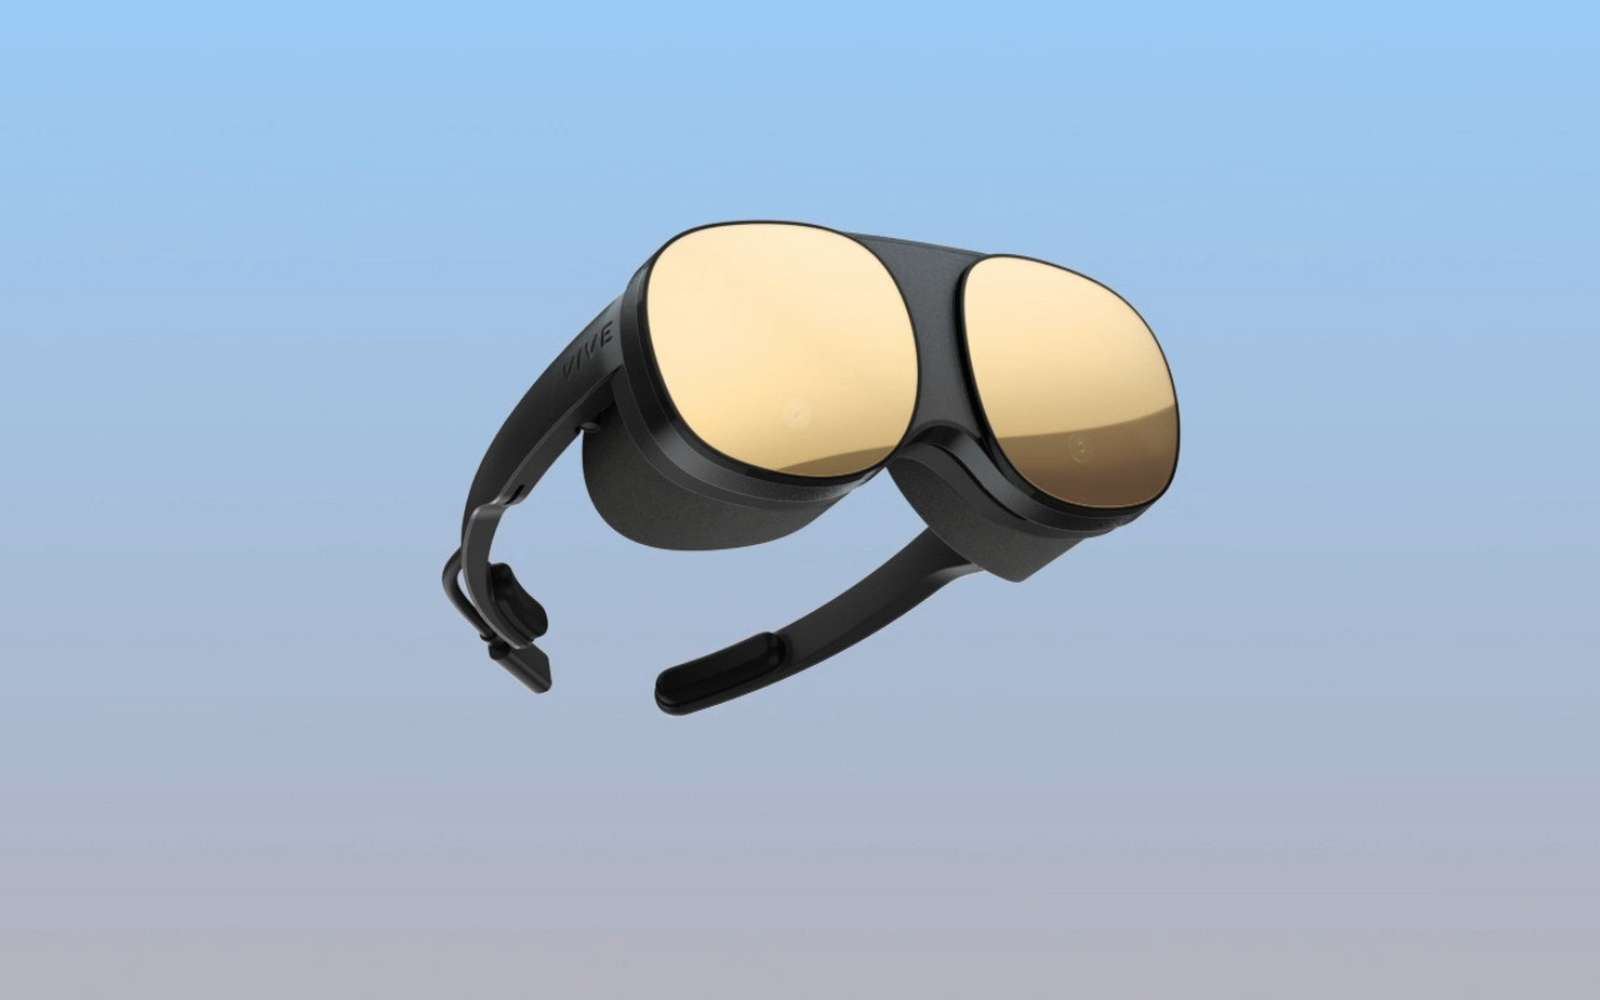 Vive Flow : des « lunettes immersives » ultra légères pour la réalité virtuelle